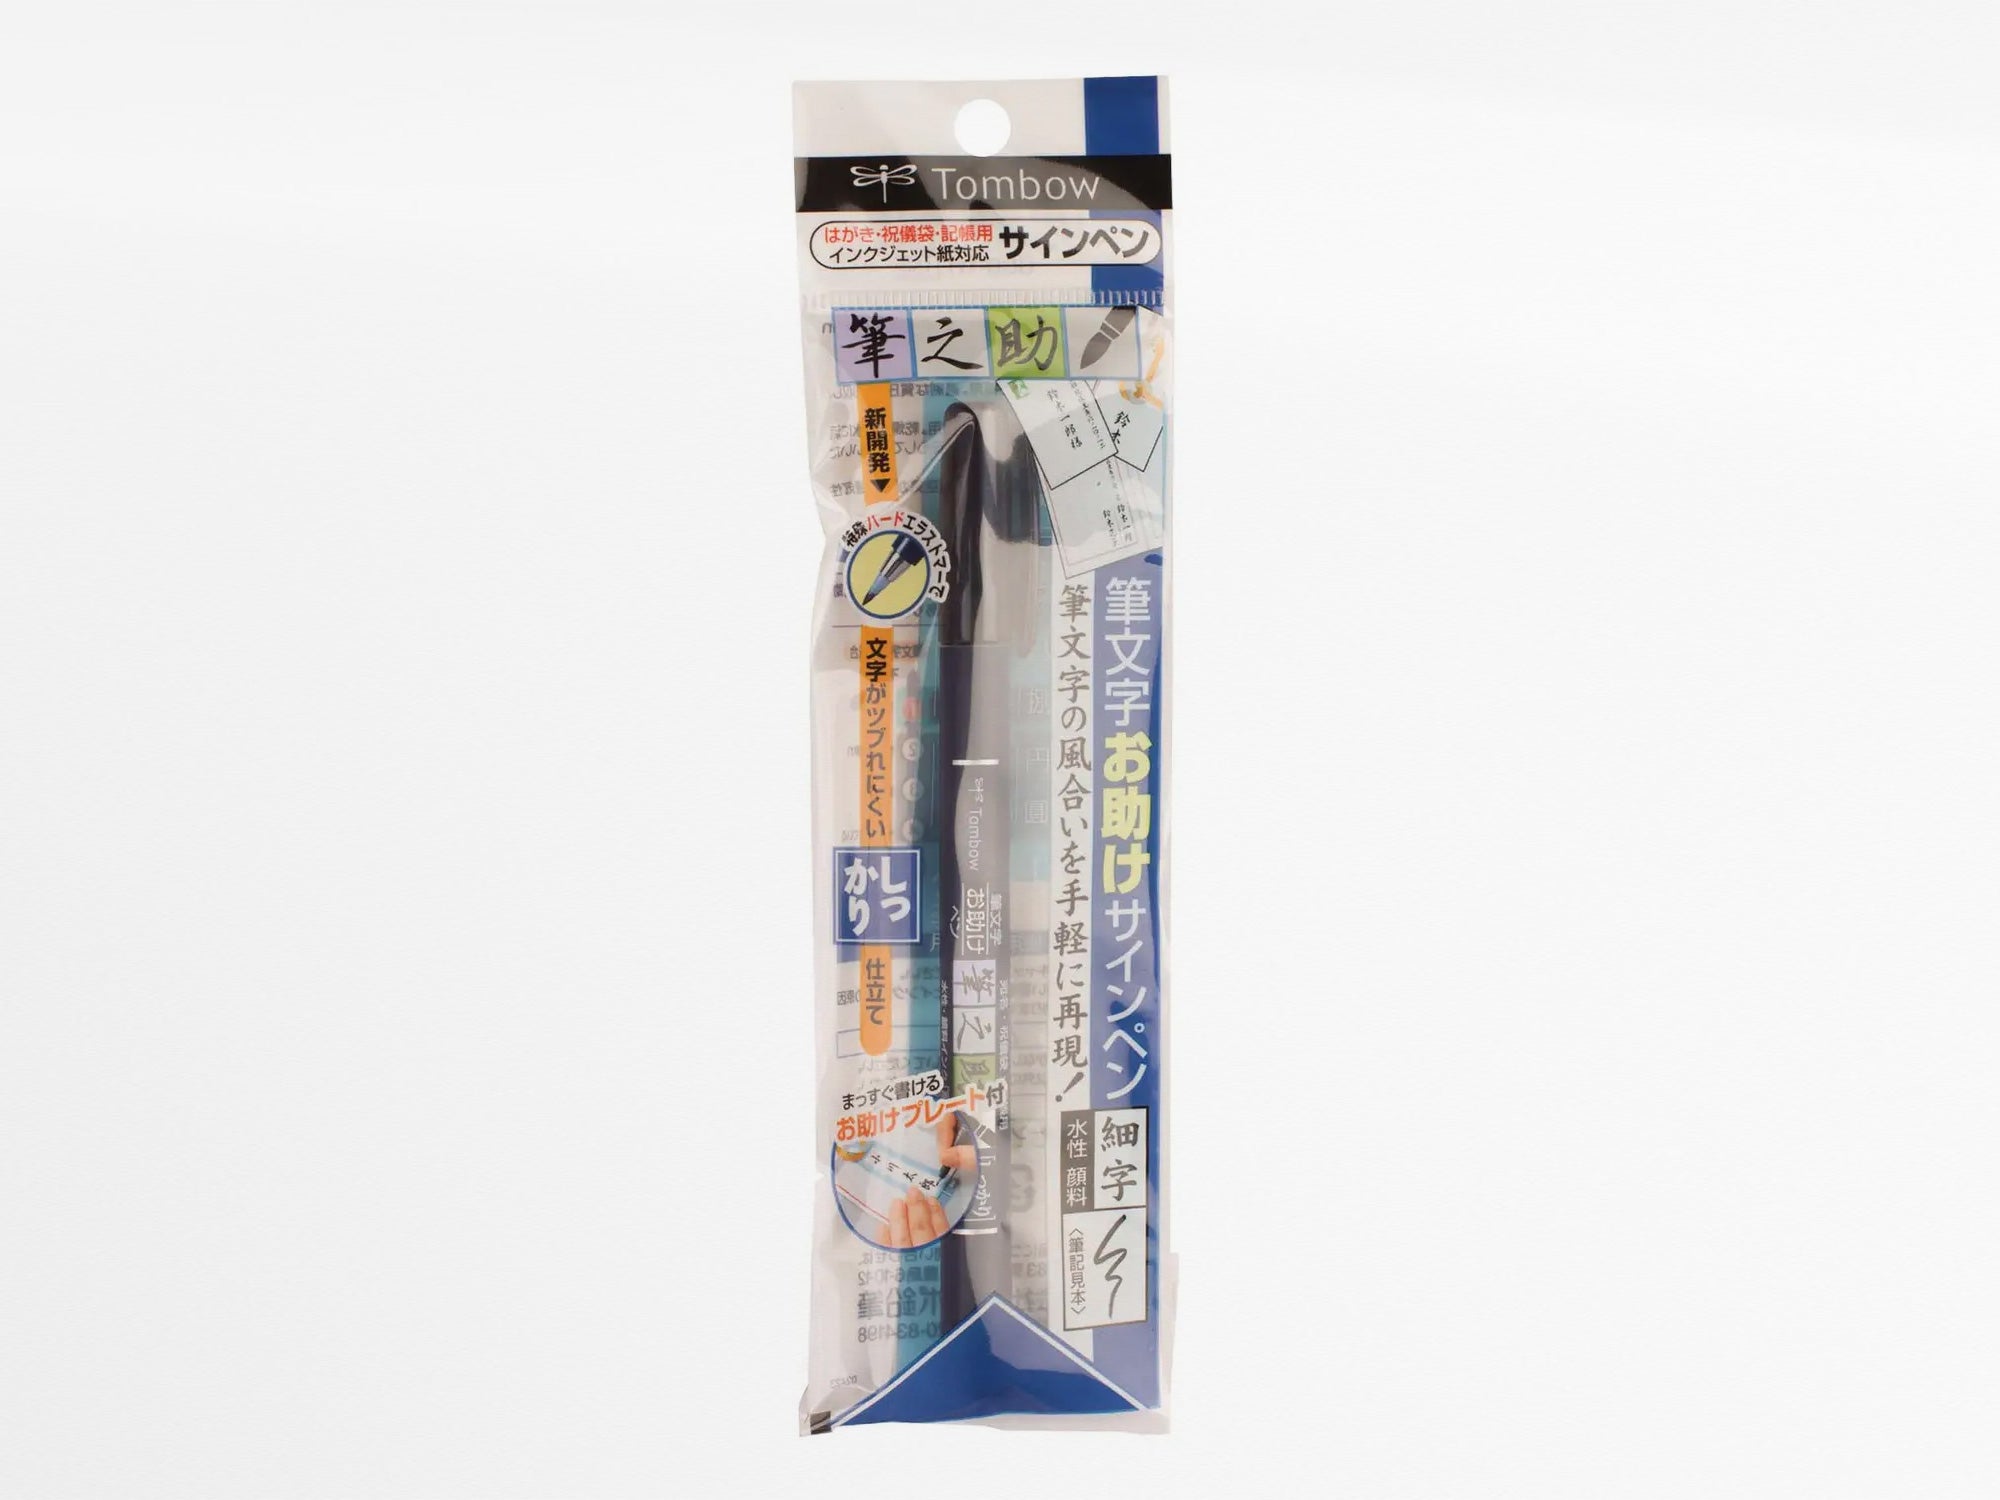 Fudenosuke Brush Pen, Hard Tip, Black, Calligraphy & Lettering